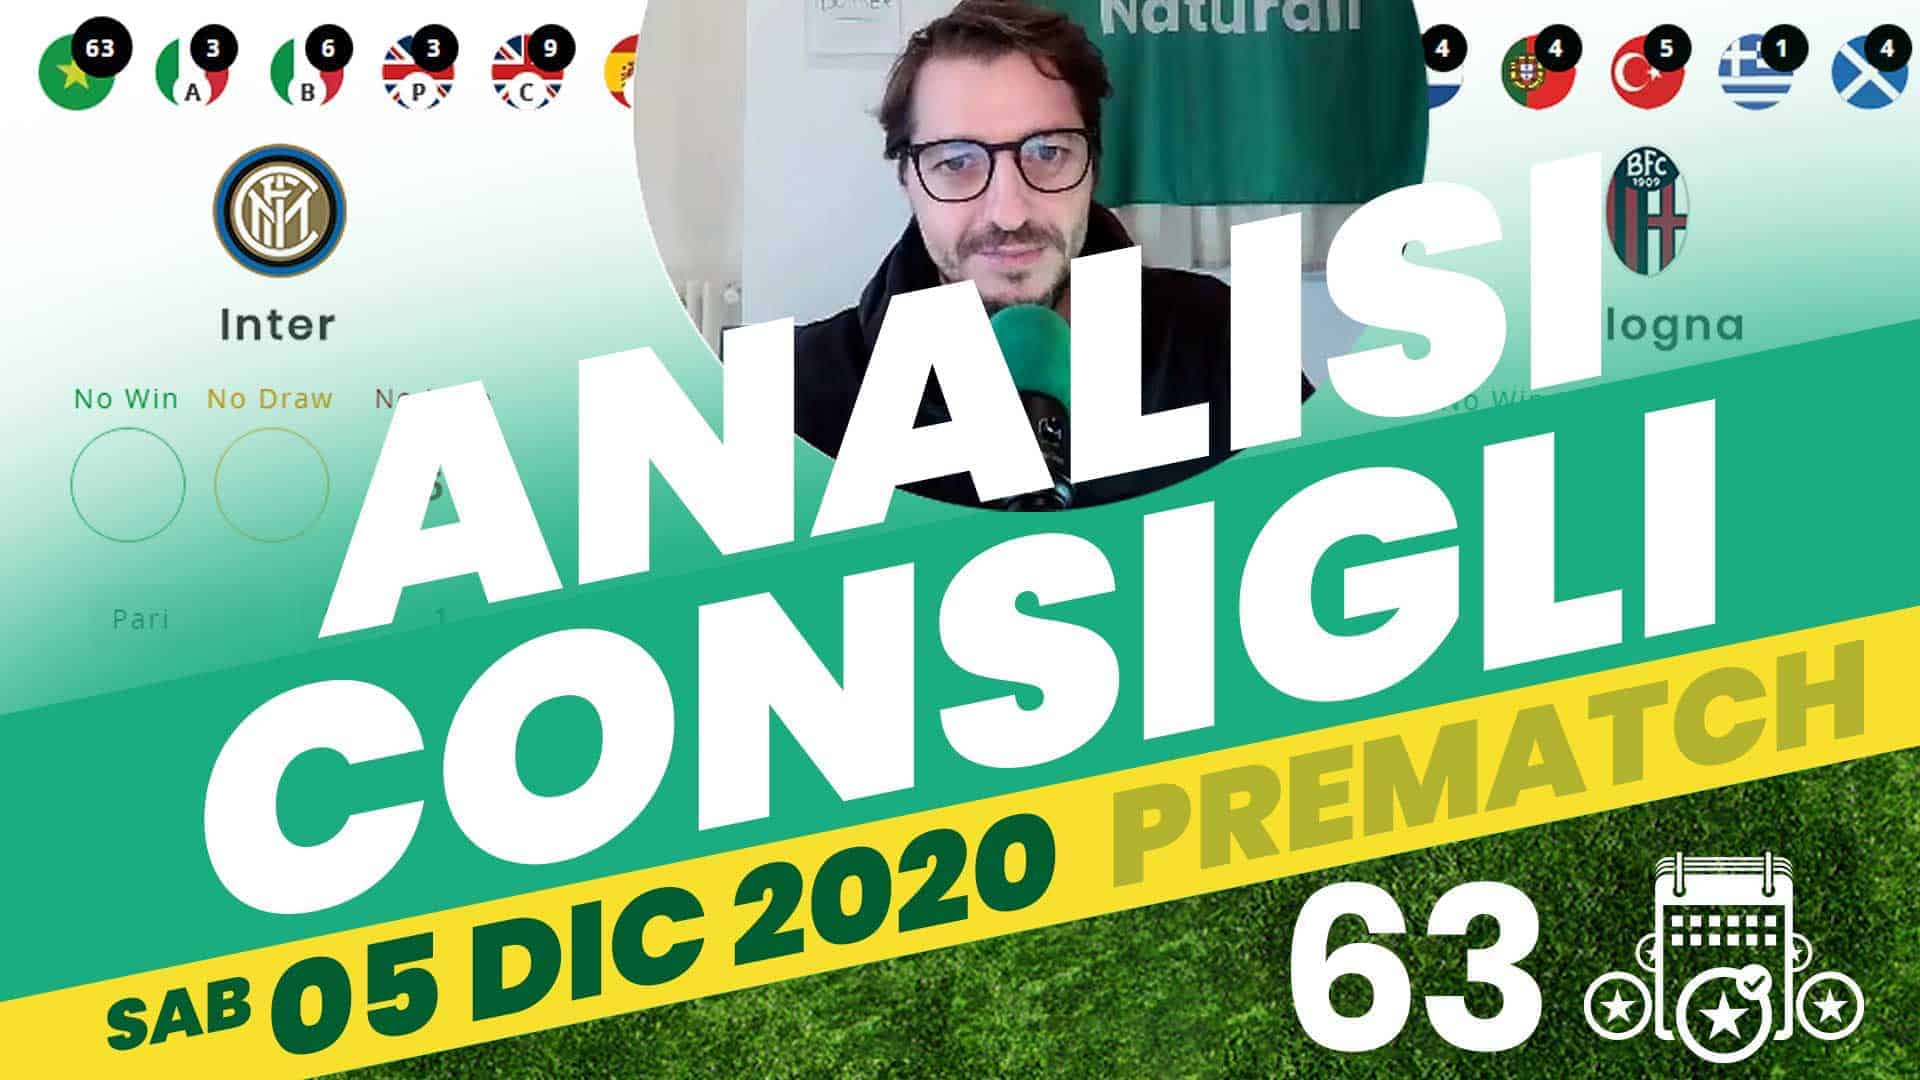 Pronostici Naturali Video Analisi Scommesse Betting Calcio Pre Partite Sabato 5 Dicembre 2020